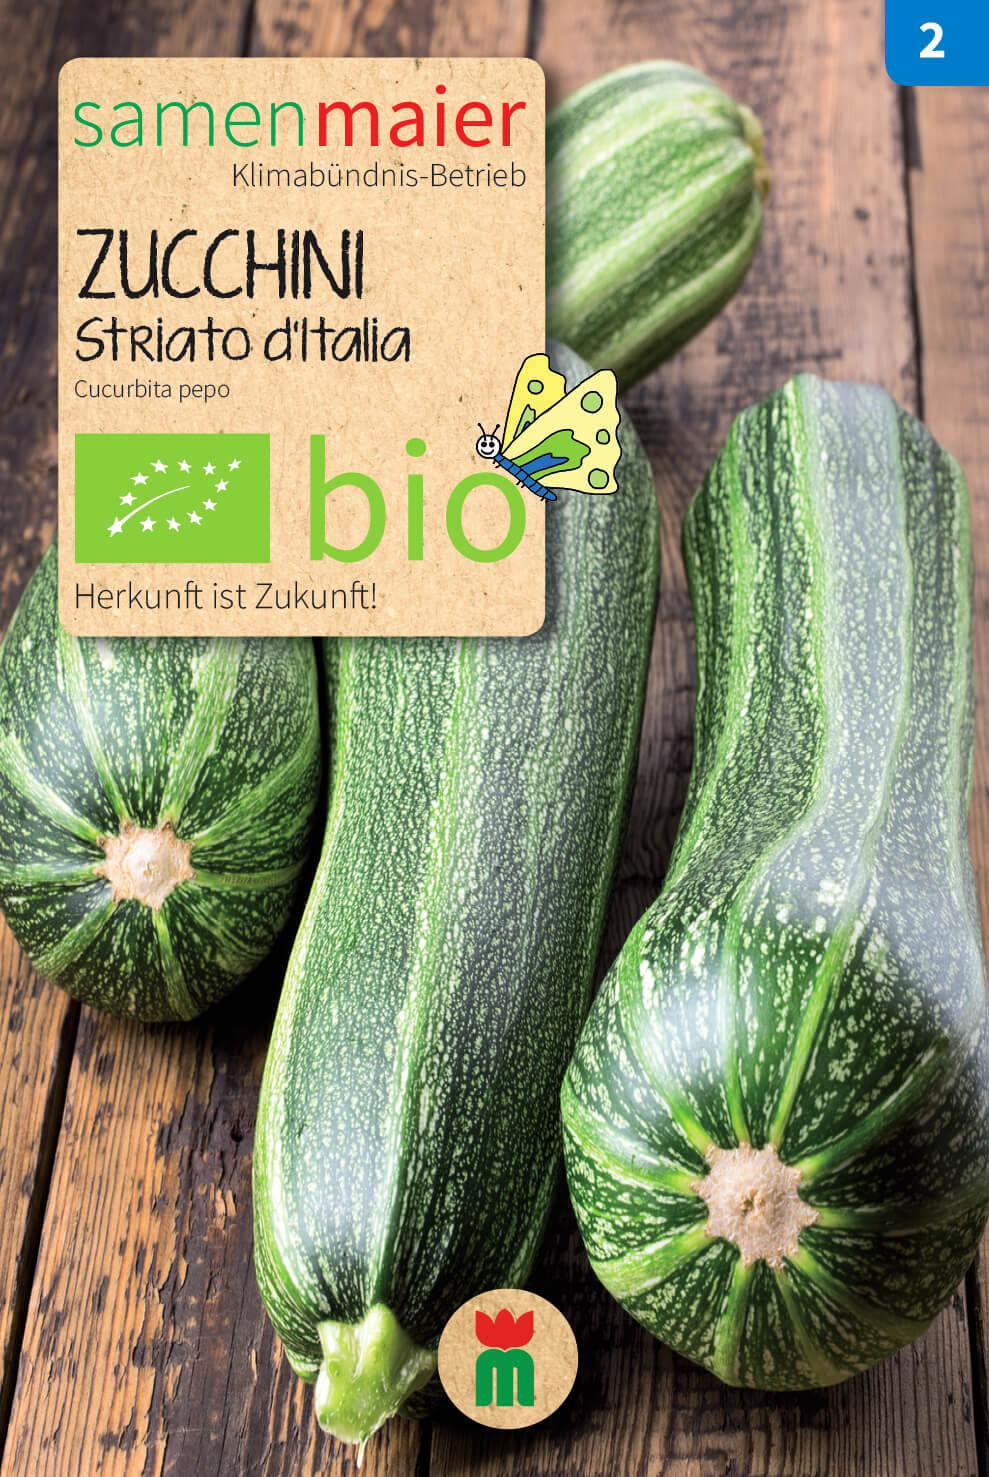 Beet-Box "Für Teilzeit-Italiener" | BIO Gemüsesamen-Sets von Samen Maier